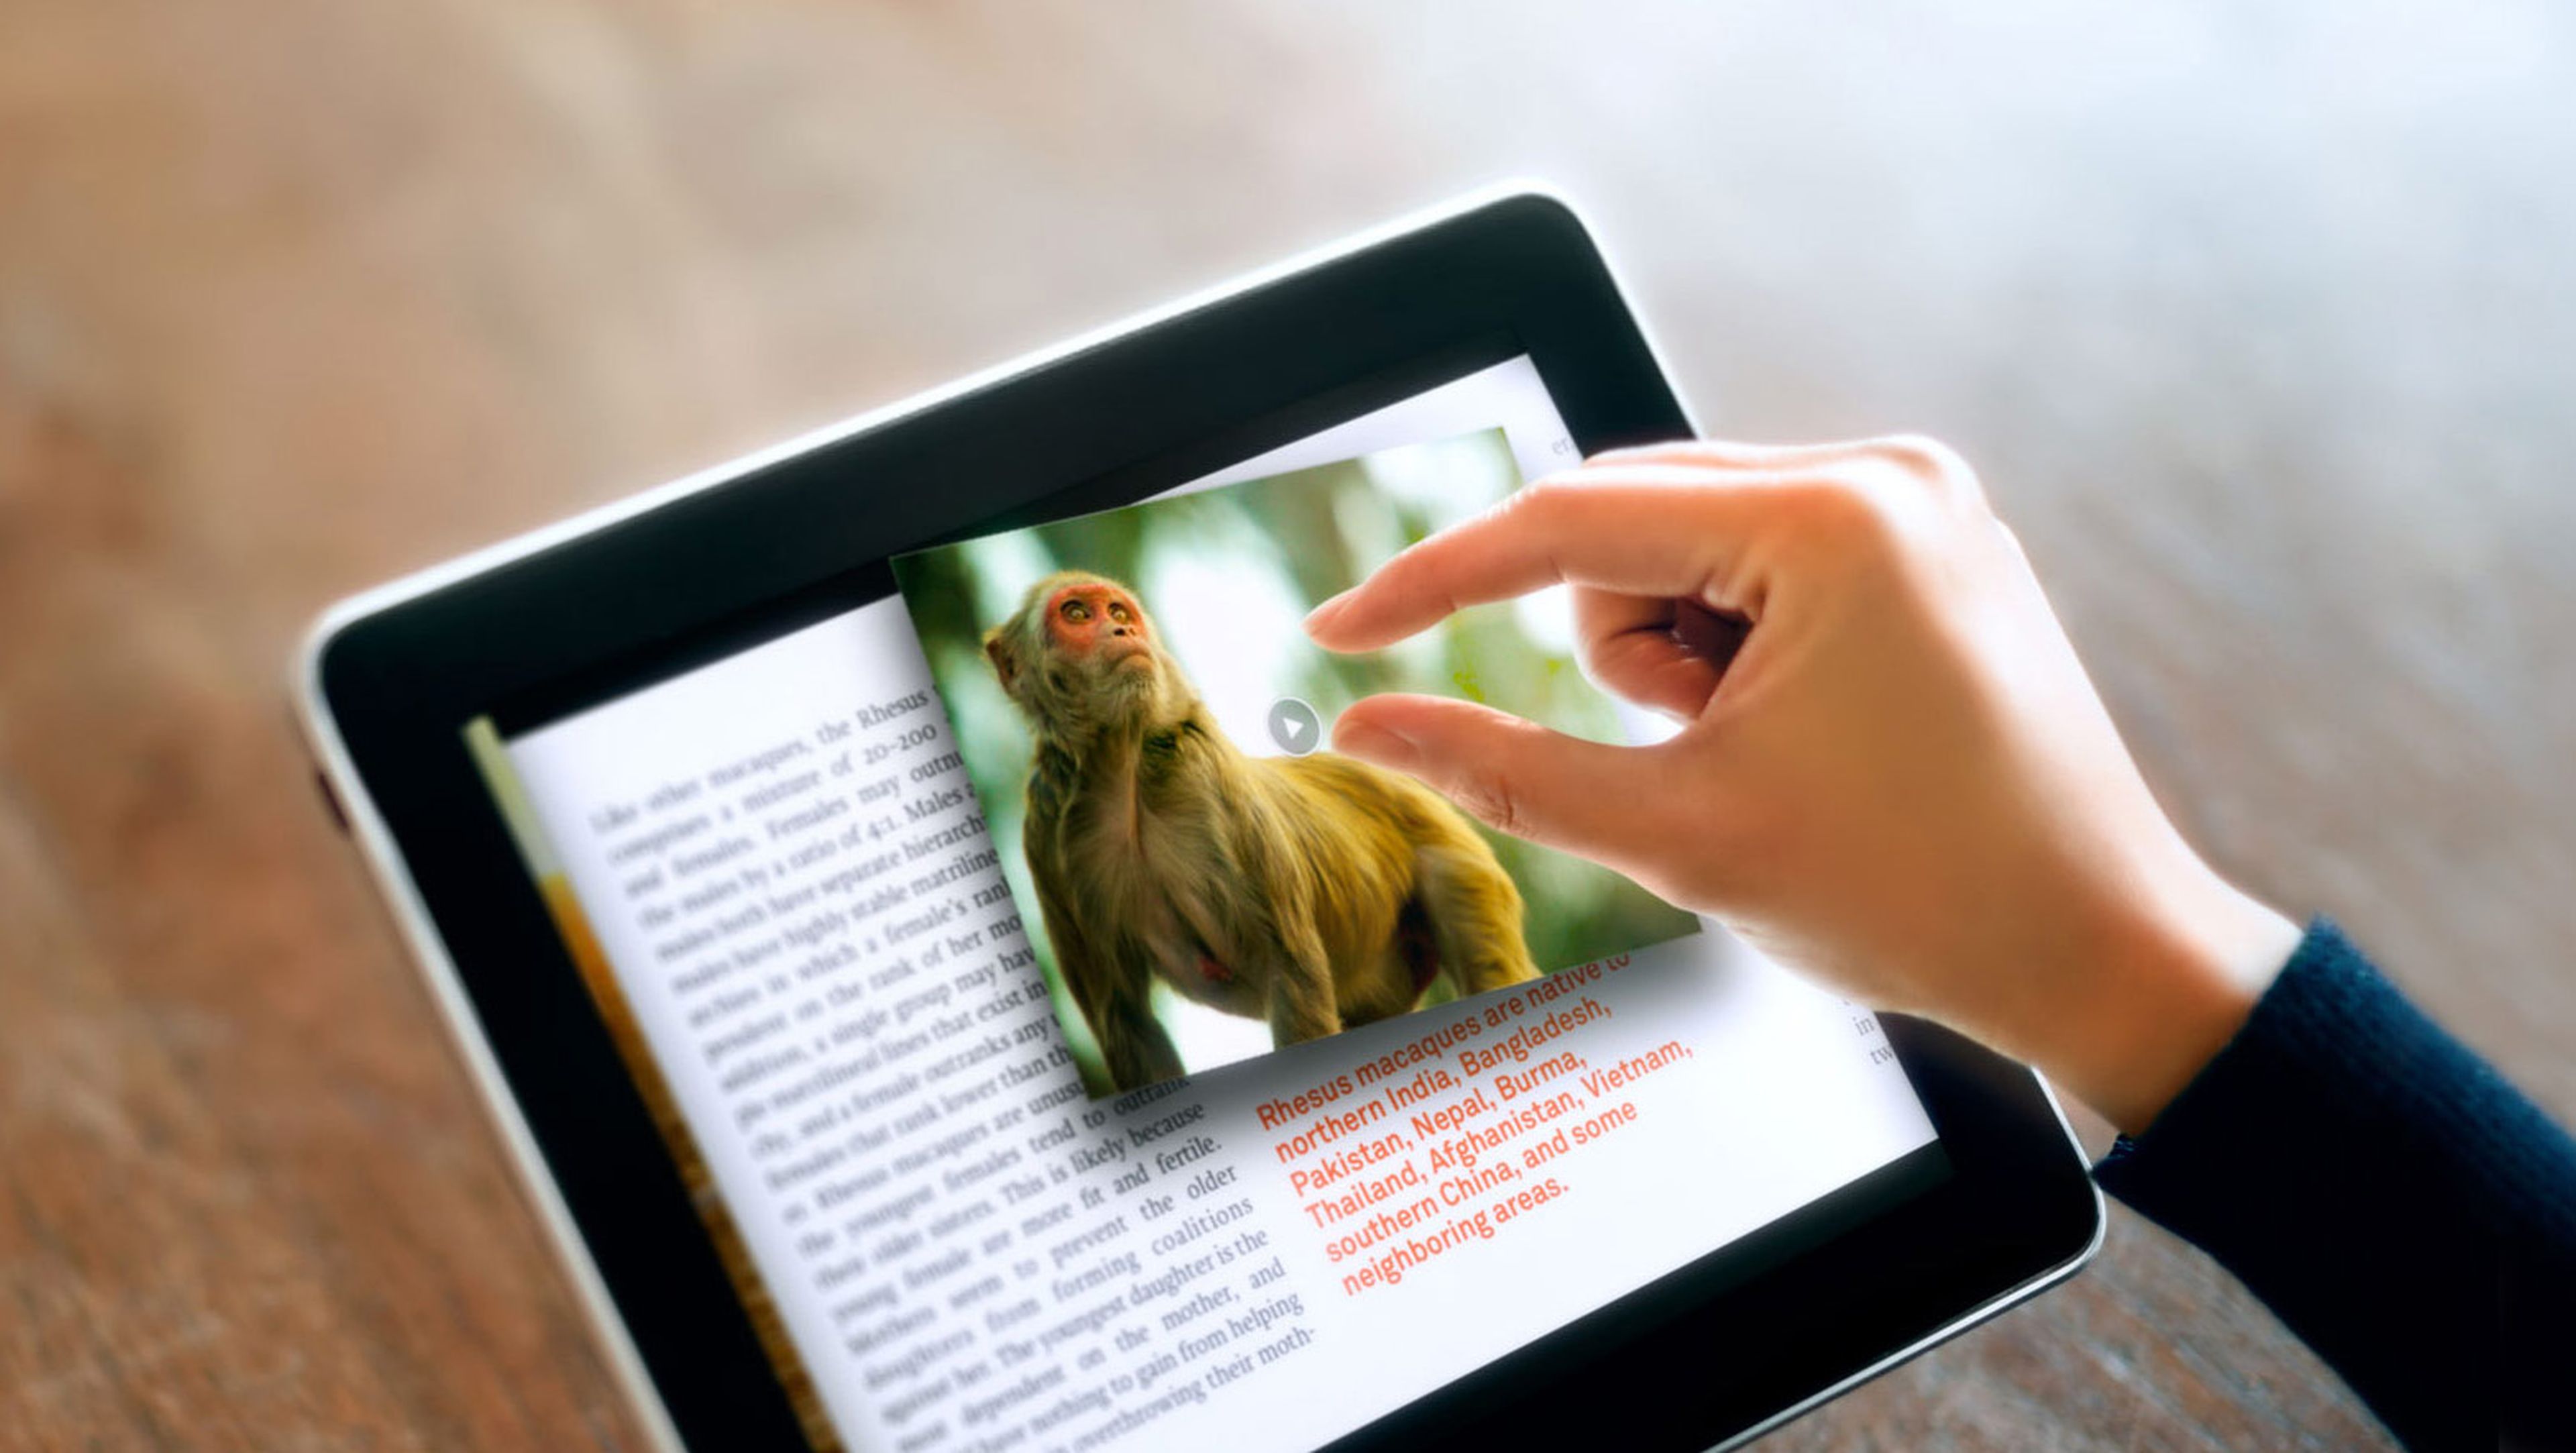 Google patenta un libro interactivo con proyección de vídeo